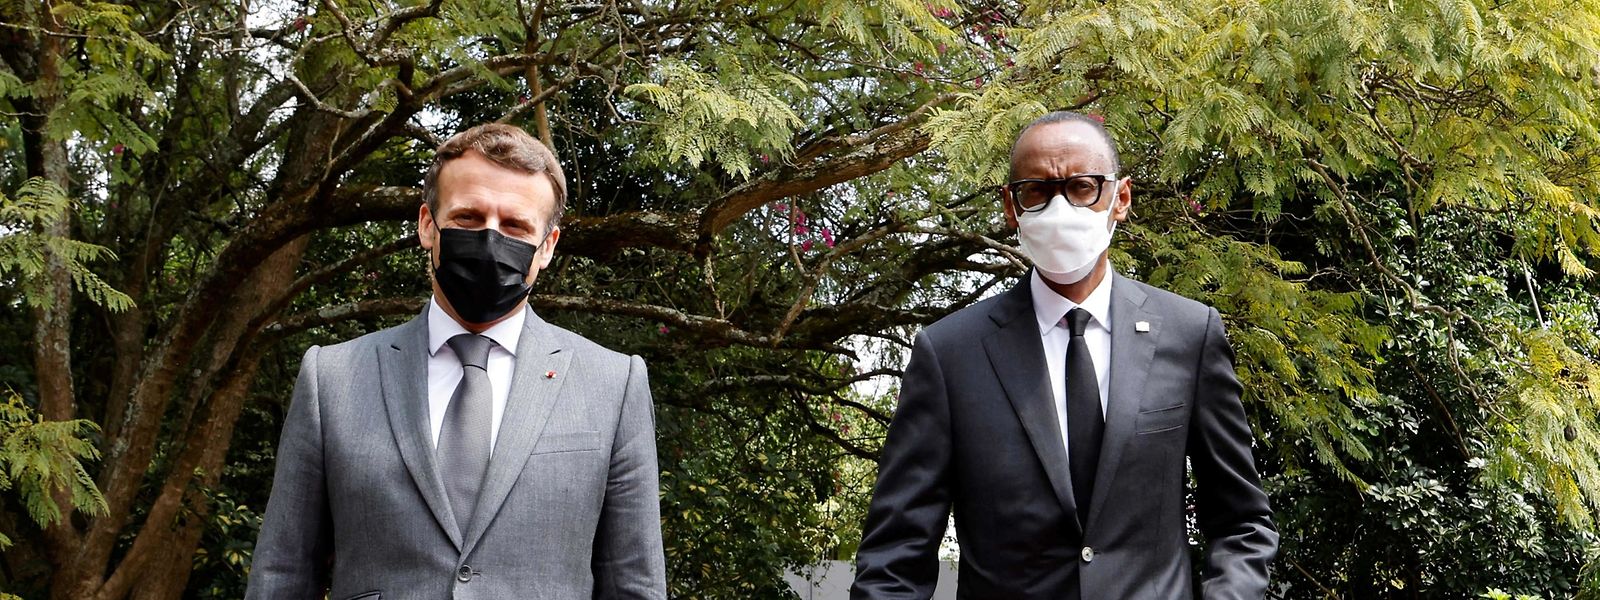 Der französische Präsident Emmanuel Macron am Donnerstag neben Paul Kagame, Präsident von Ruanda.